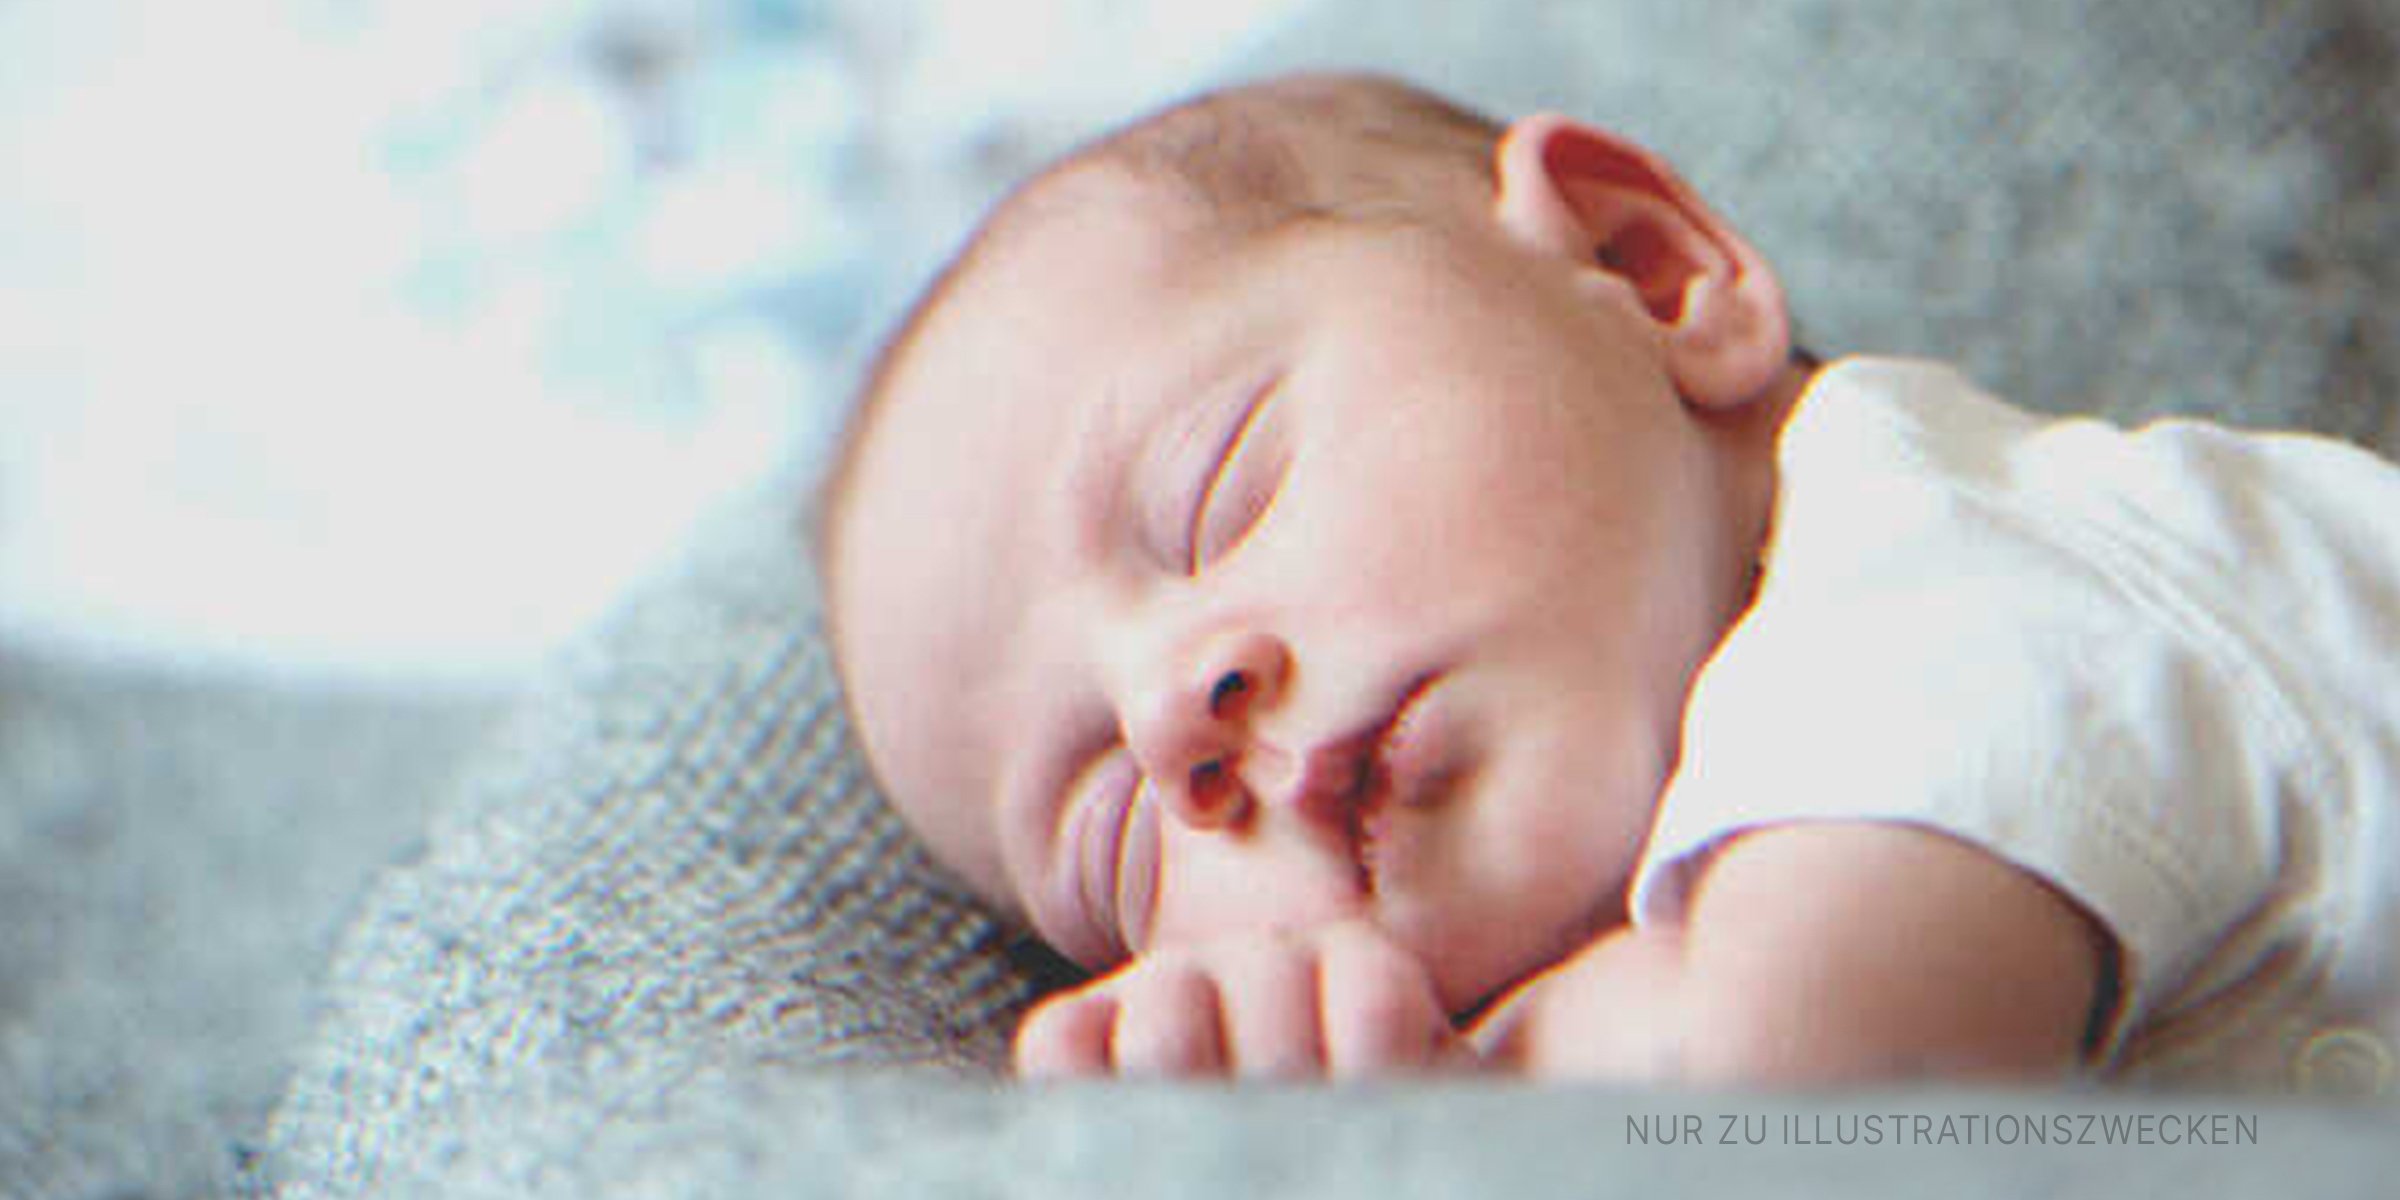 Niedliches Baby schläft friedlich. | Quelle: Shutterstock